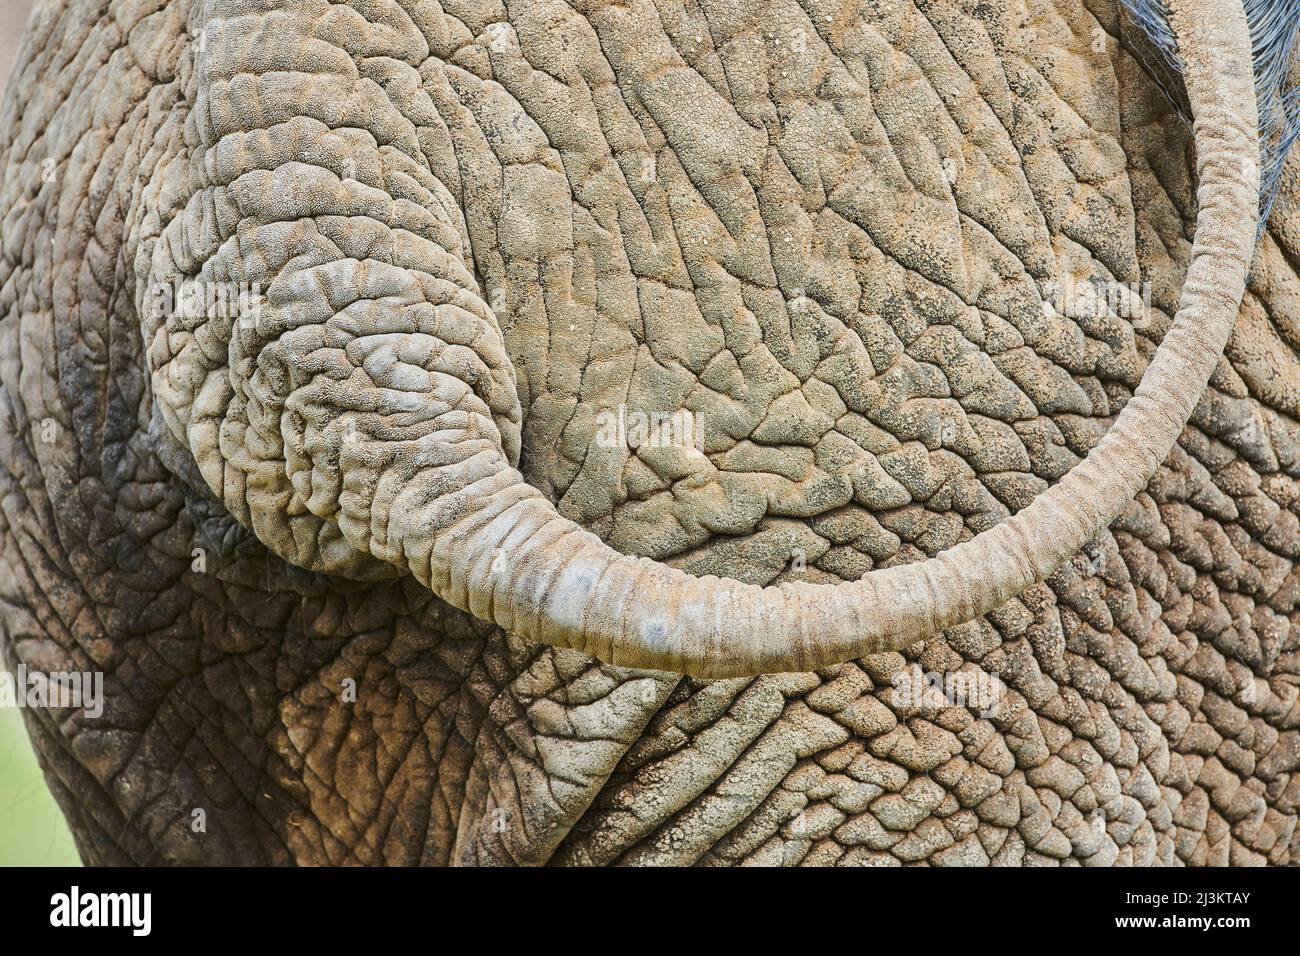 Nahaufnahme der faltigen Haut, des Rückens und des Schwanzes eines afrikanischen Buschelefanten (Loxodonta africana), gefangen; Tschechische Republik Stockfoto